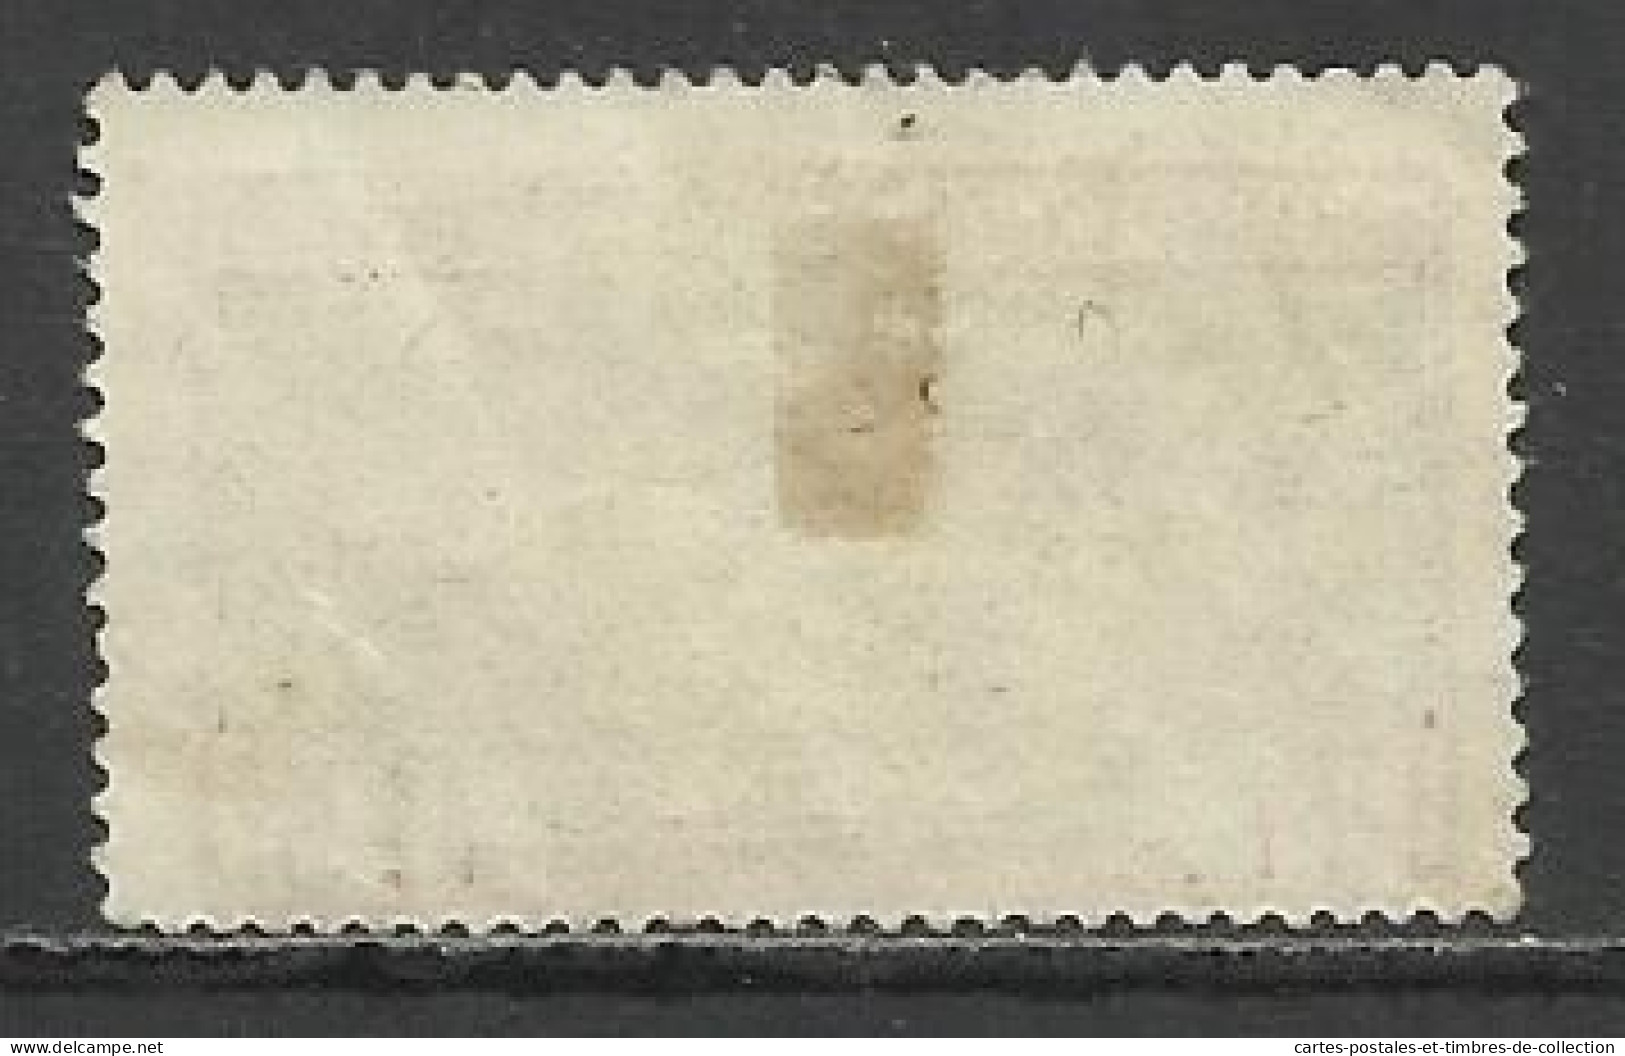 GUADELOUPE ET DEPENDANCES , Lot de 7 timbres , 1905 - 1947 , voir scans